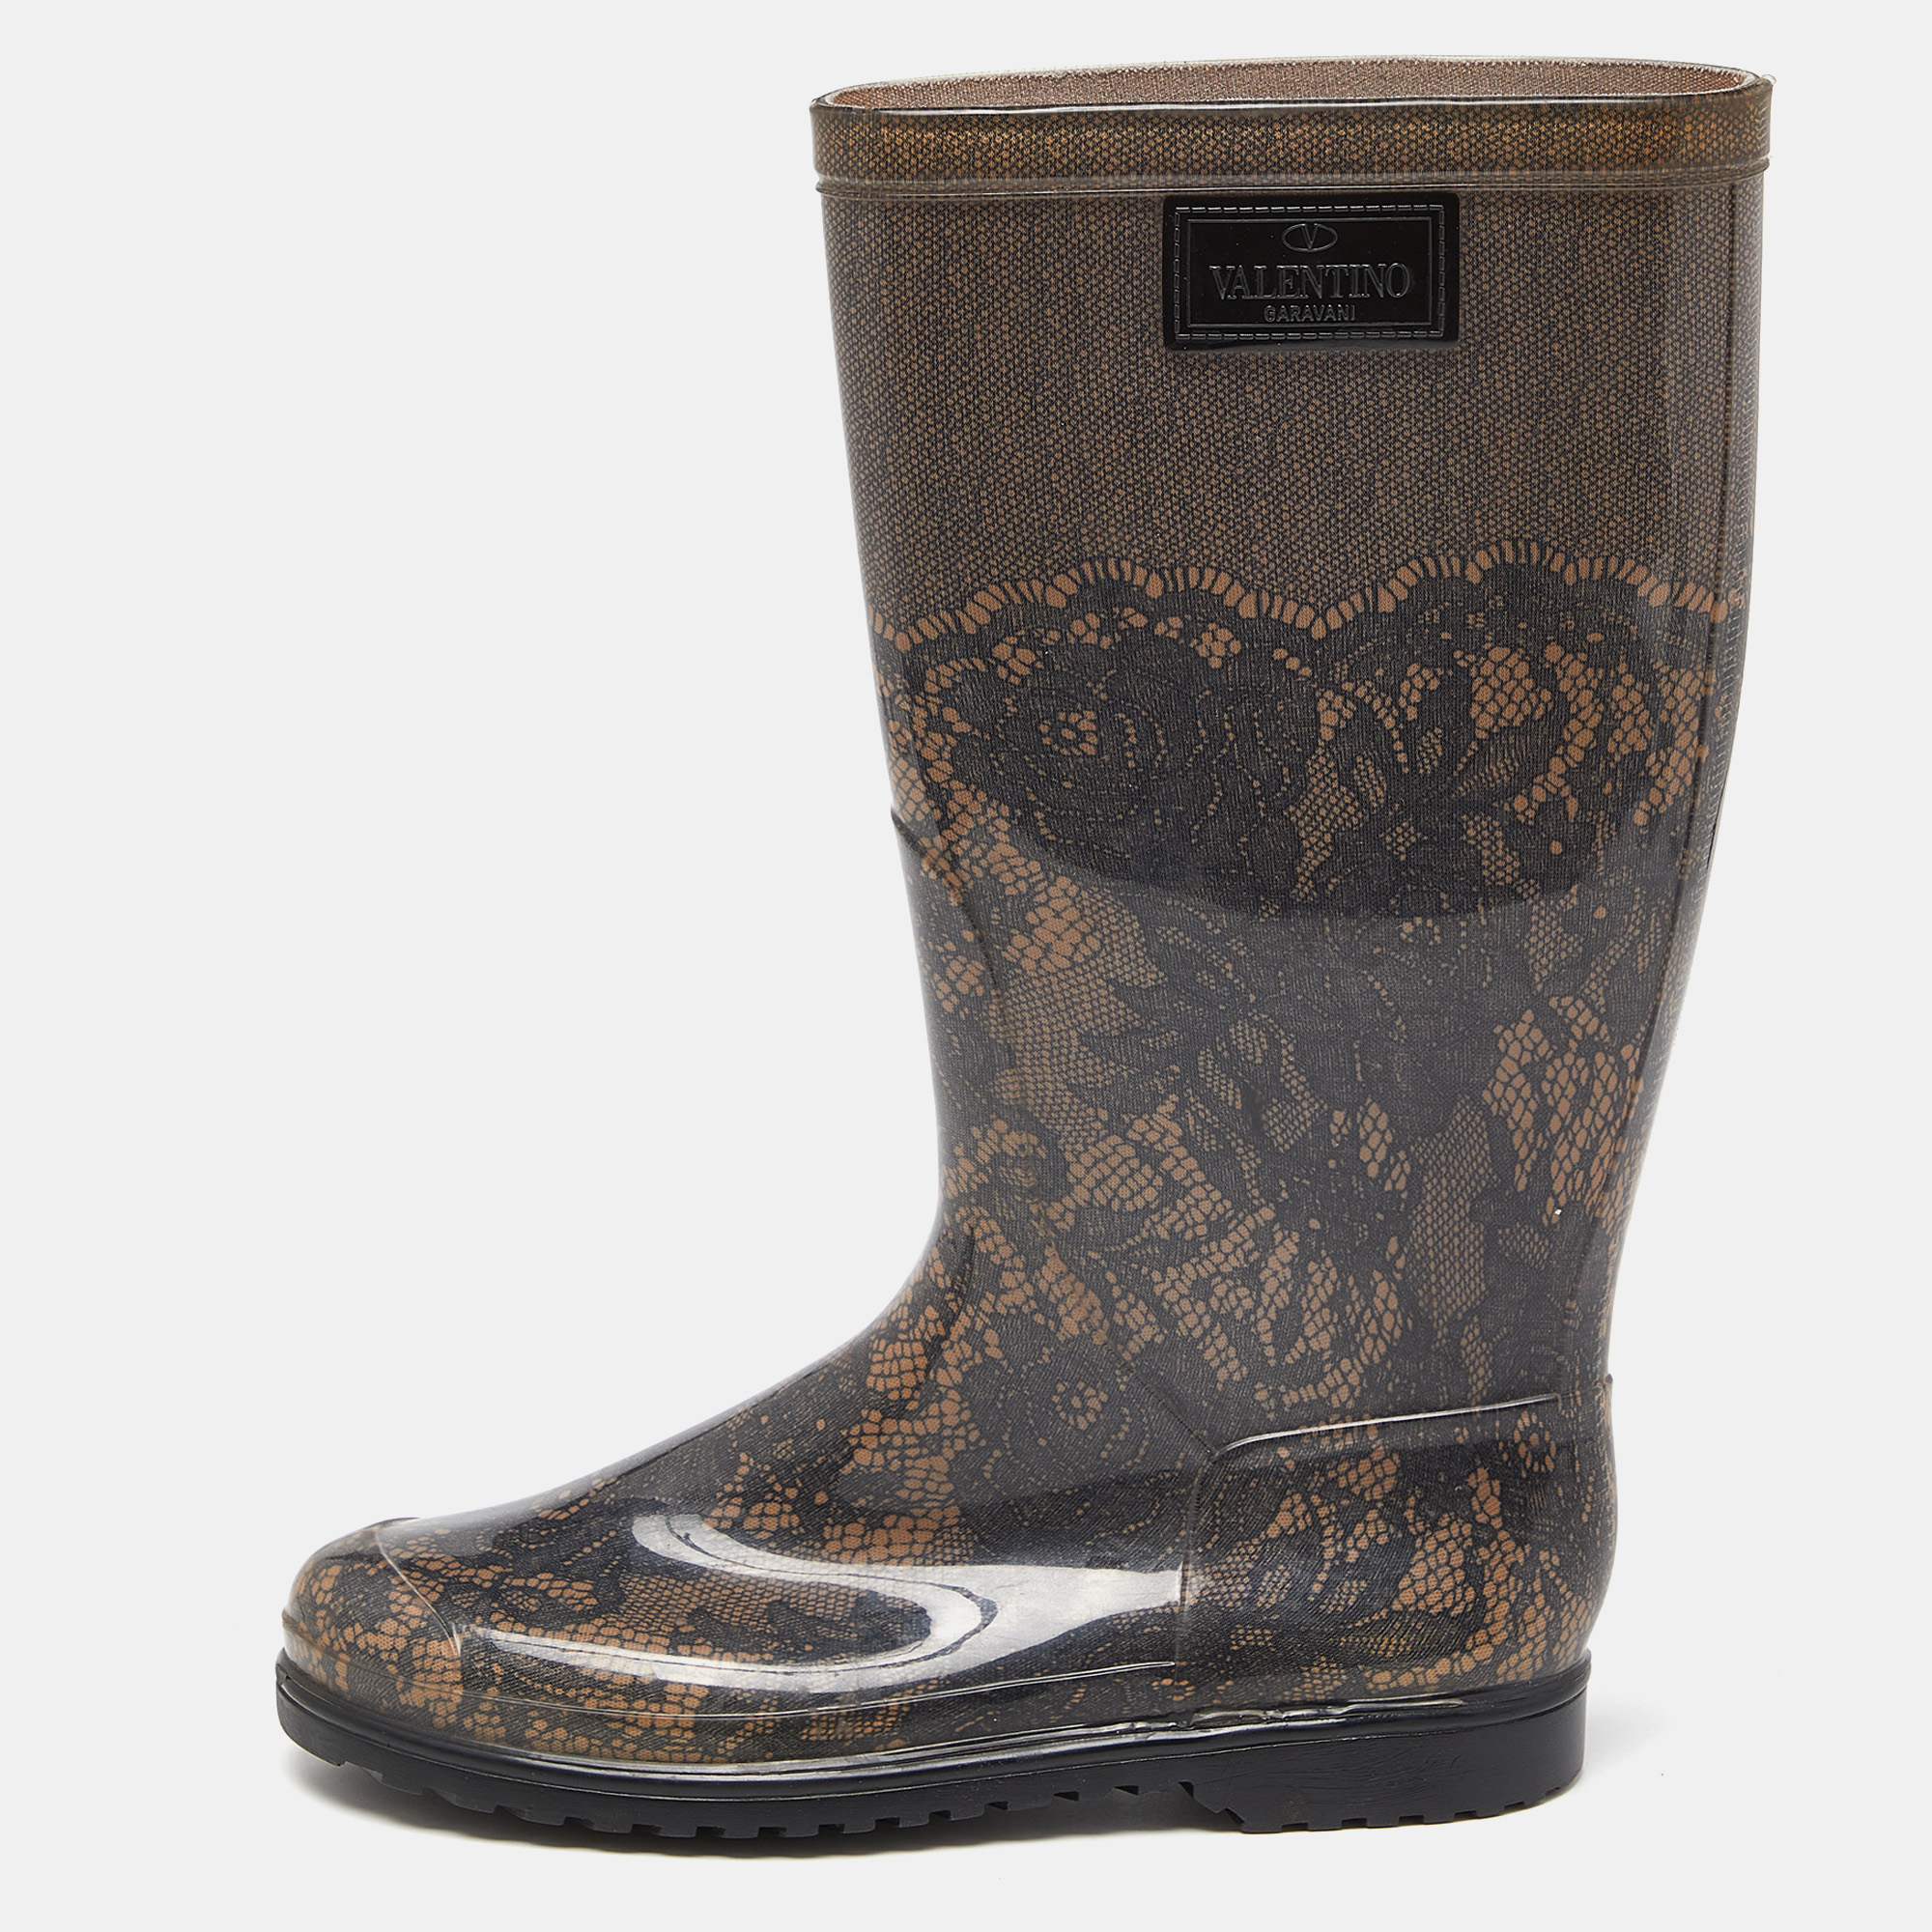 

Valentino Black/Beige Lace Print Rubber Rain Boots Size